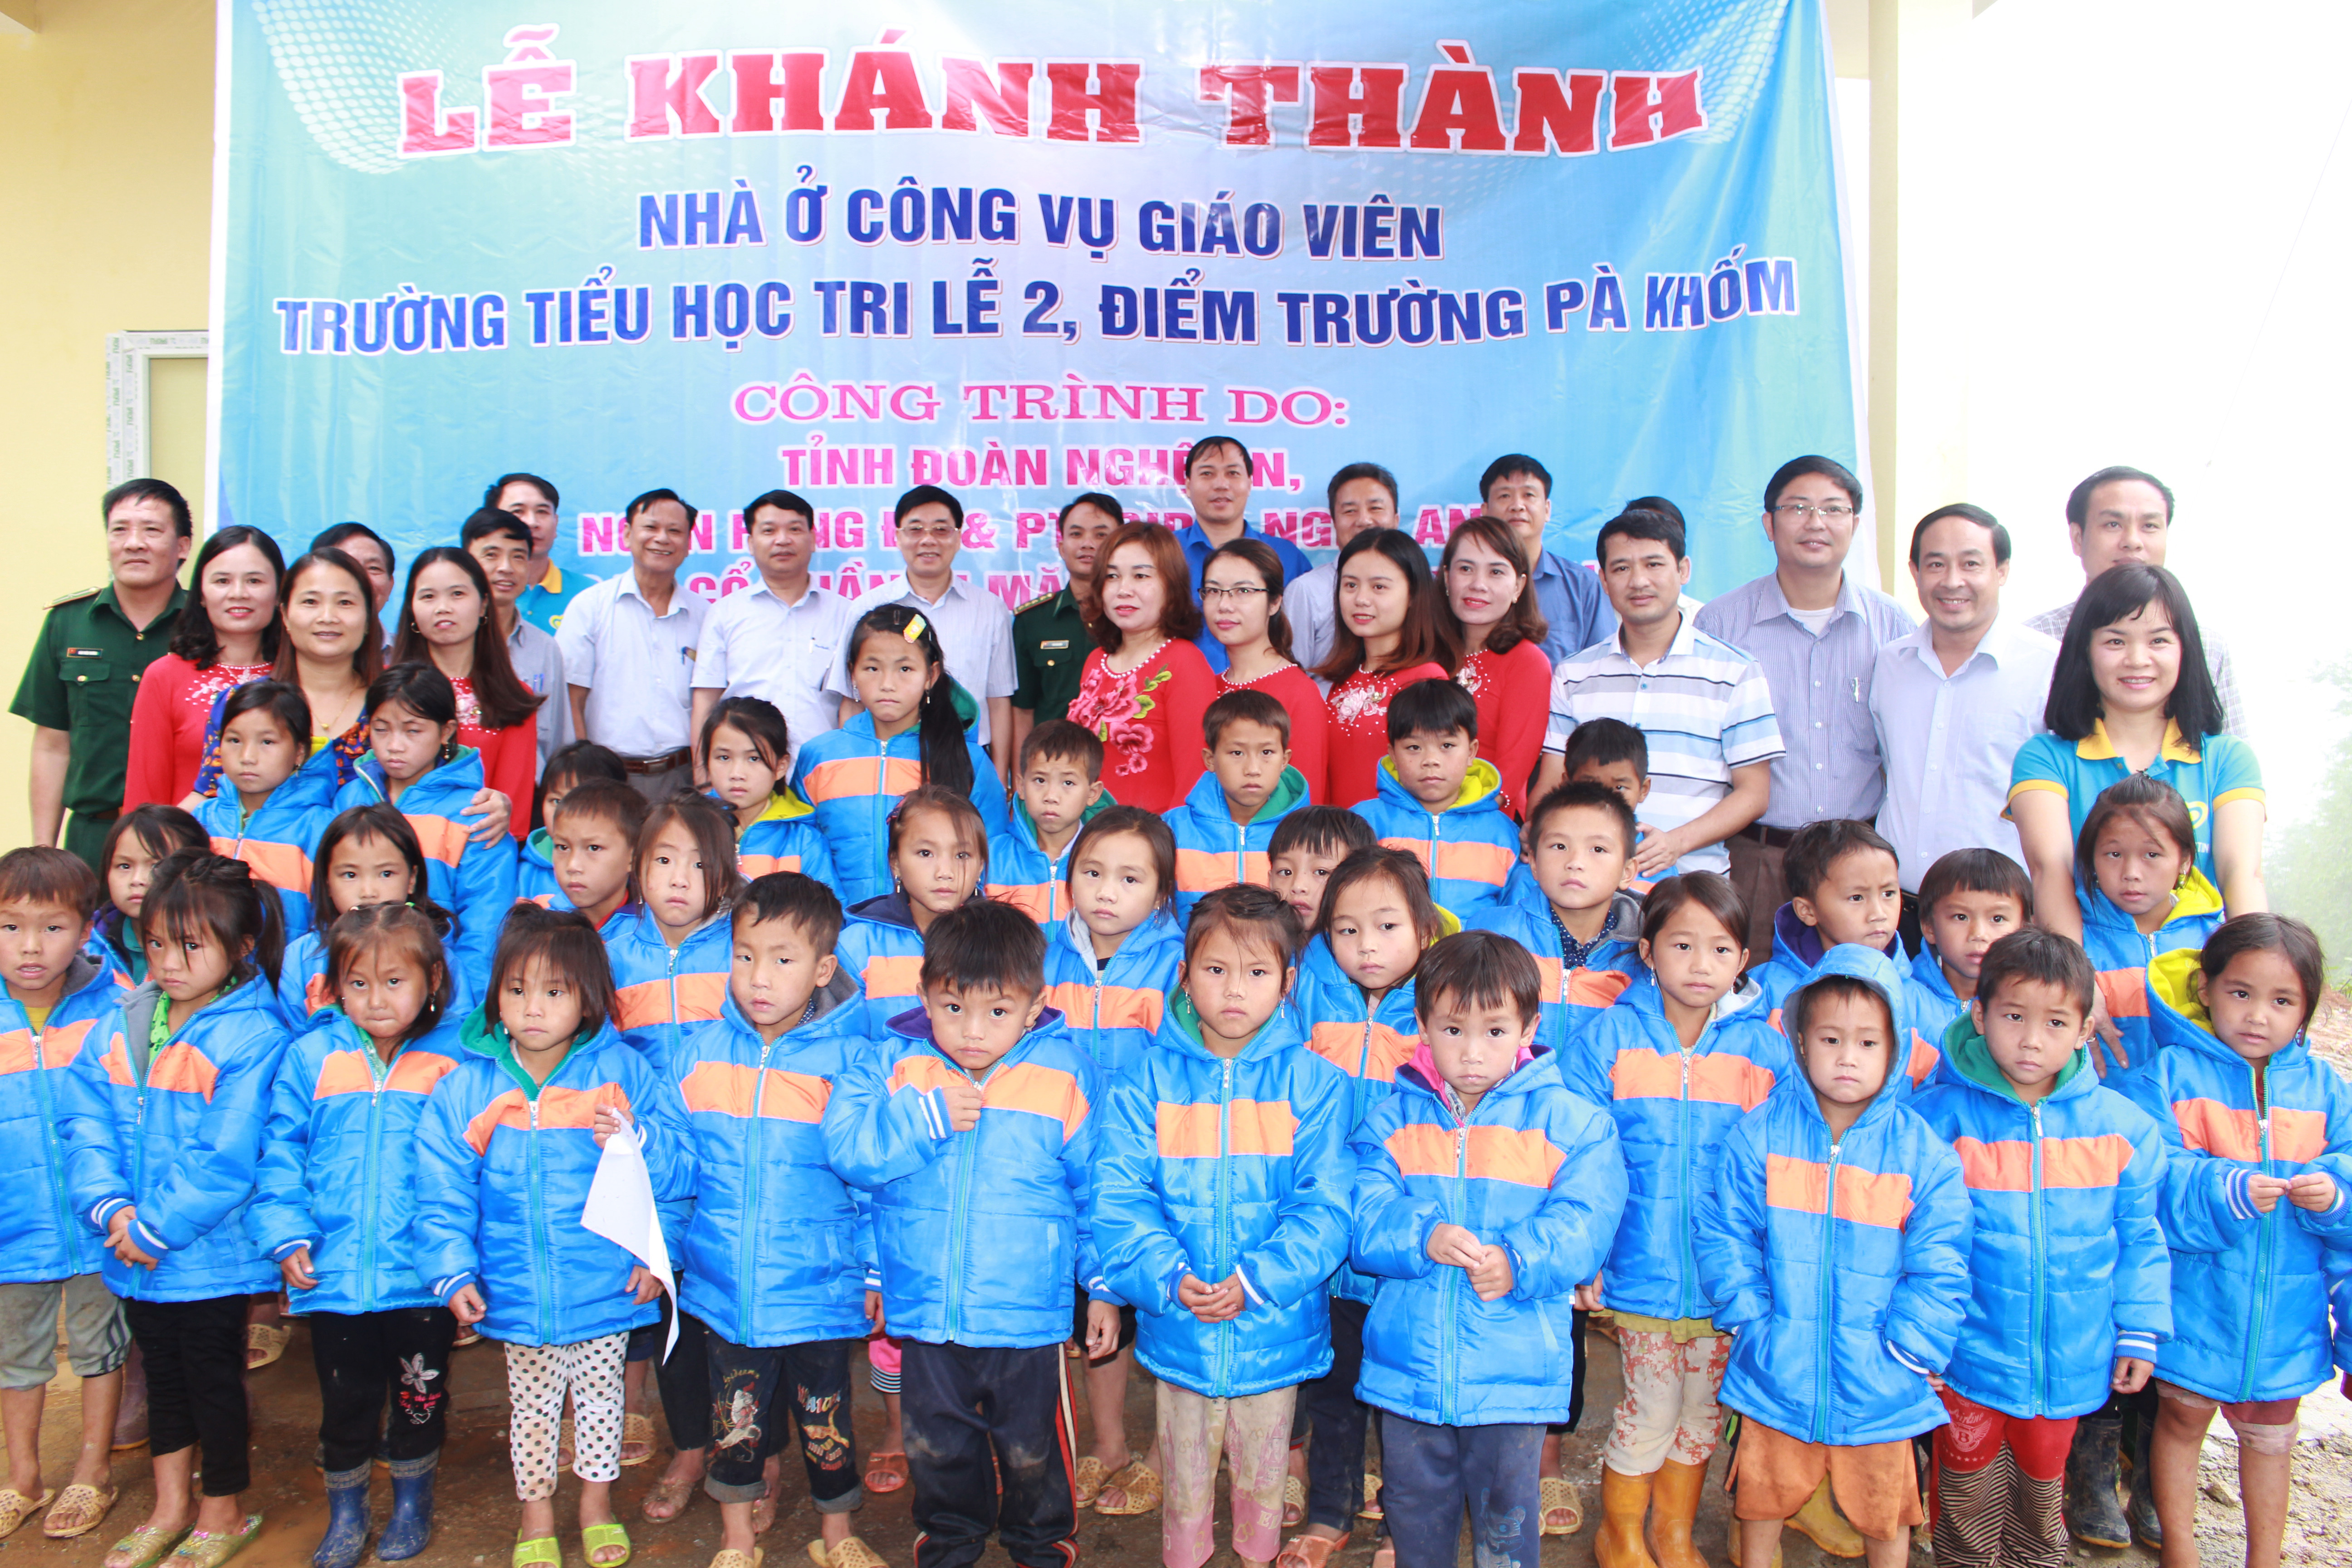 nhóm thiện nguyện Niềm Tin  (Faith Group) đã trao tặng 70 áo ấm cho các em học sinh nghèo trường Tiểu học Tri Lễ 2, điểm trường Pà Khốm.  Ảnh: Phương Thúy